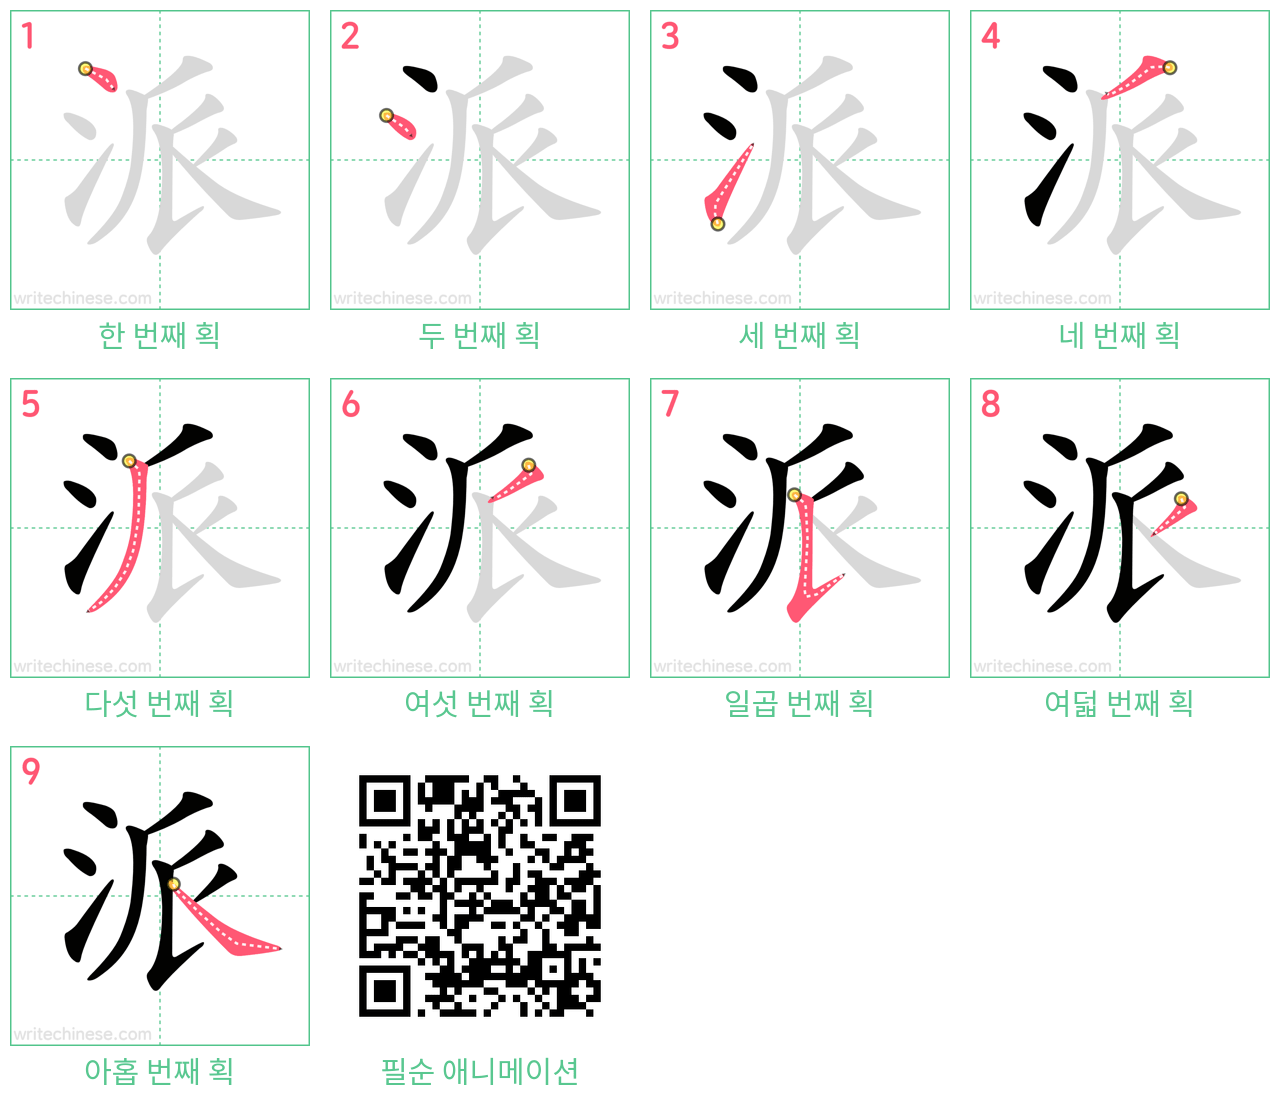 派 step-by-step stroke order diagrams